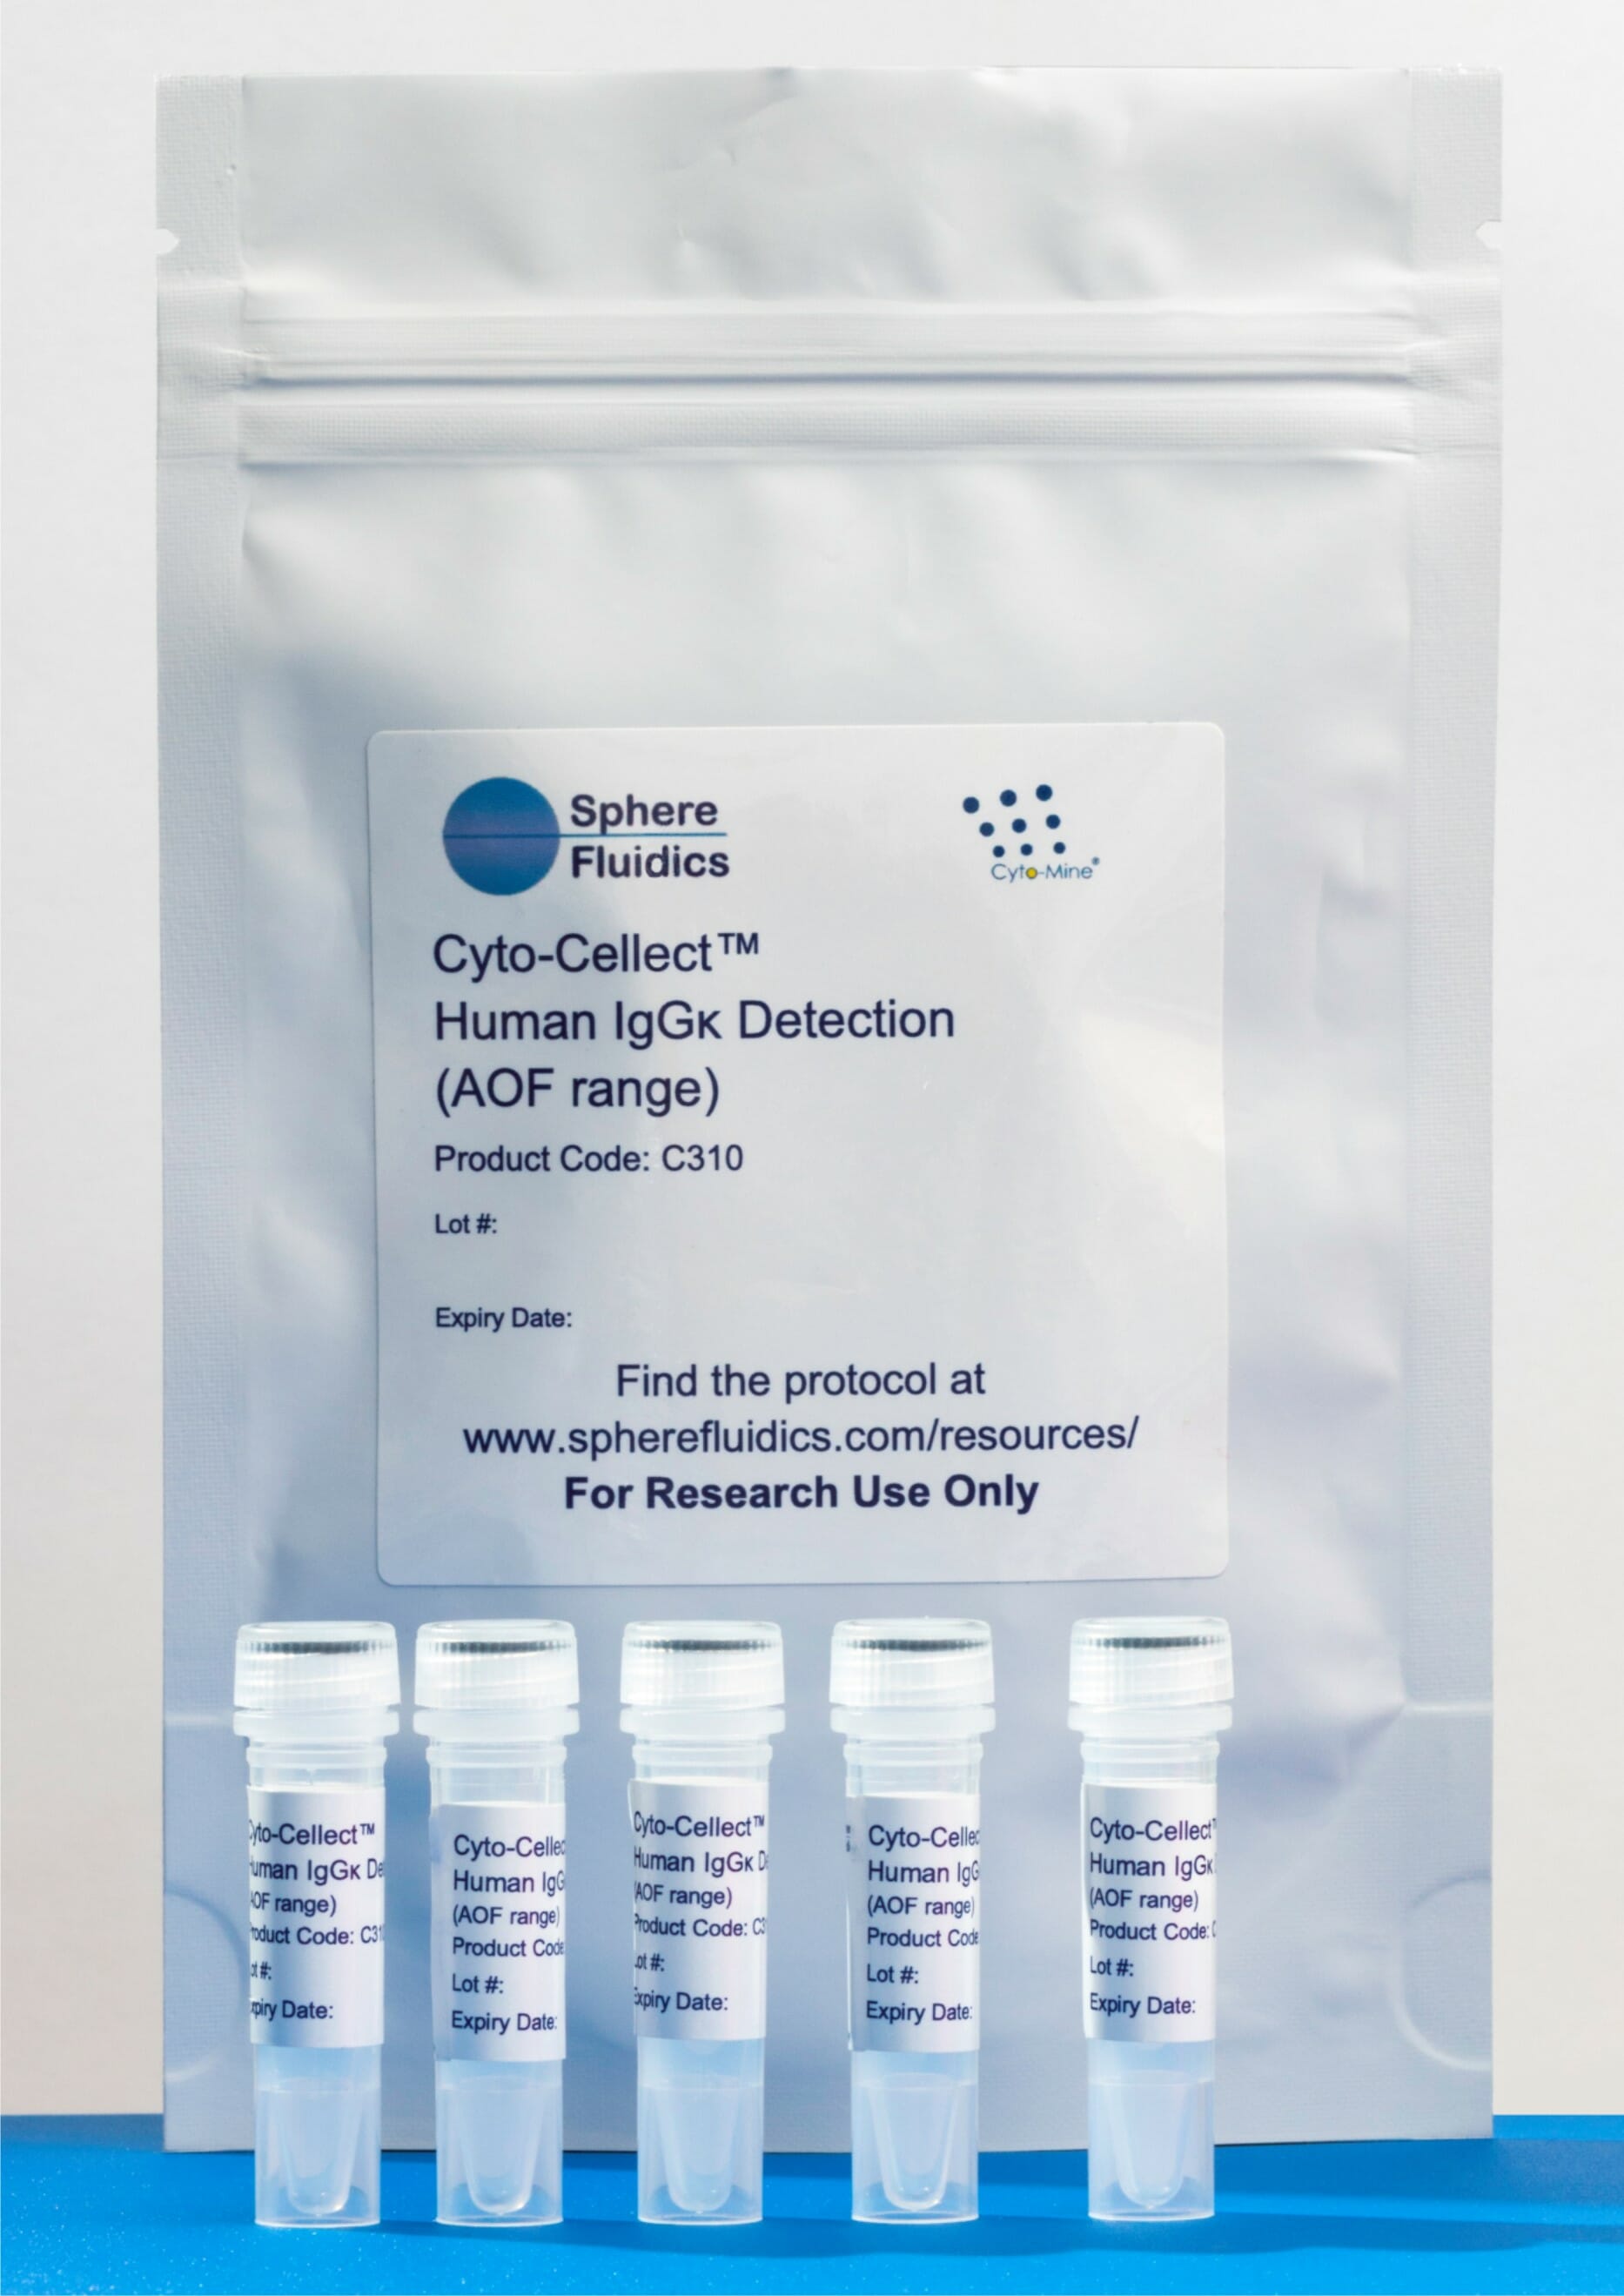 1.Cyto-Cellect Human IgGk Detection kit